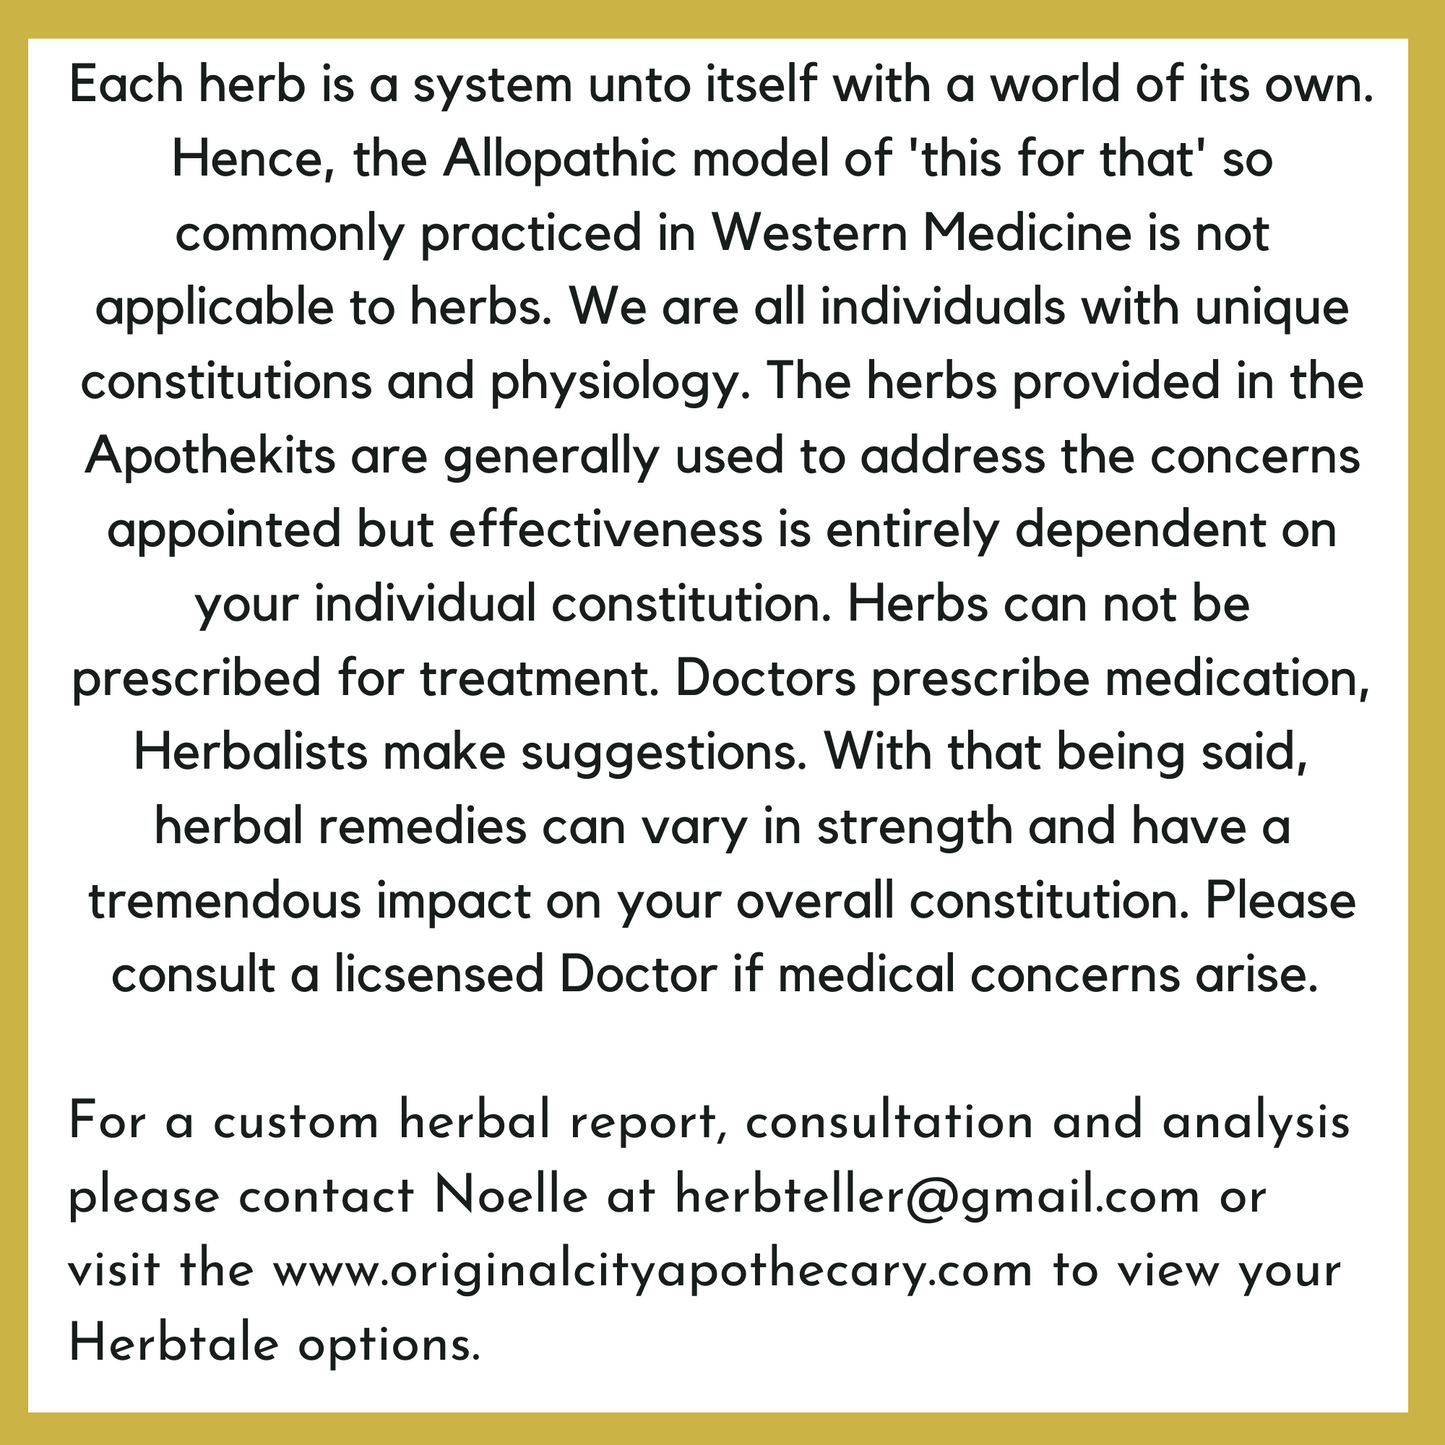 Virgo Herbs Apothekit (Herb Kit/Tea Kit)